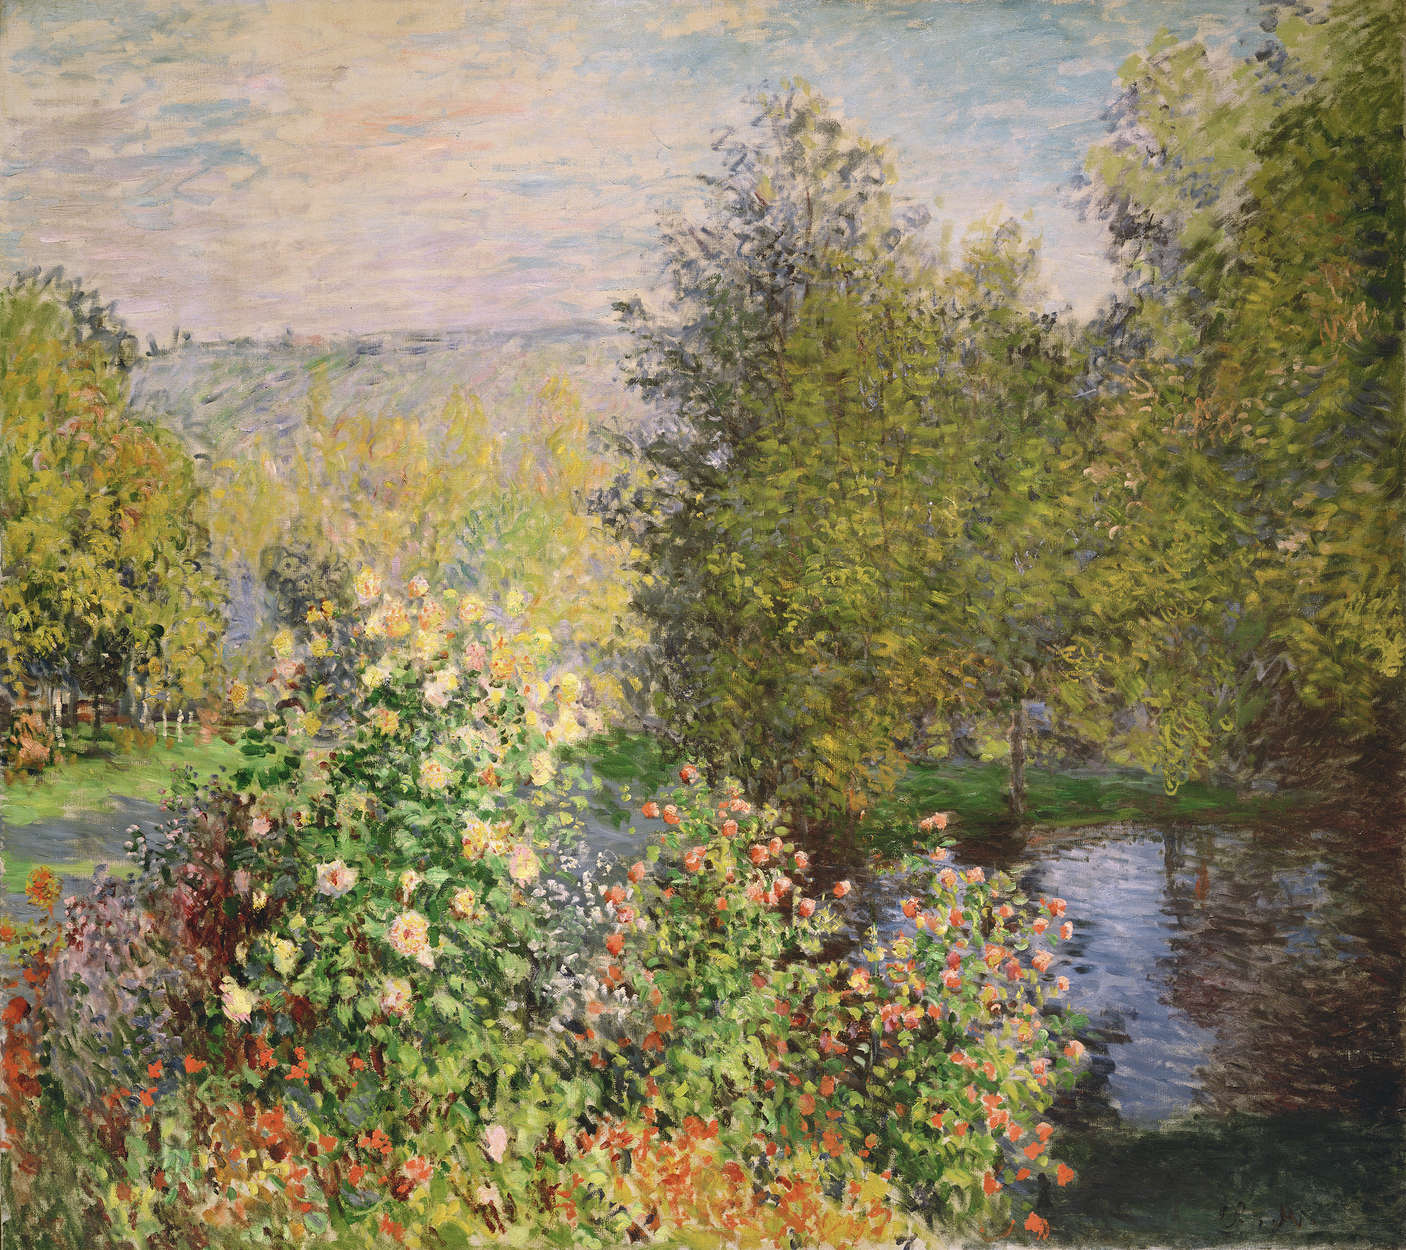             Fotomurali "Un angolo di giardino a Montgeron" di Claude Monet
        